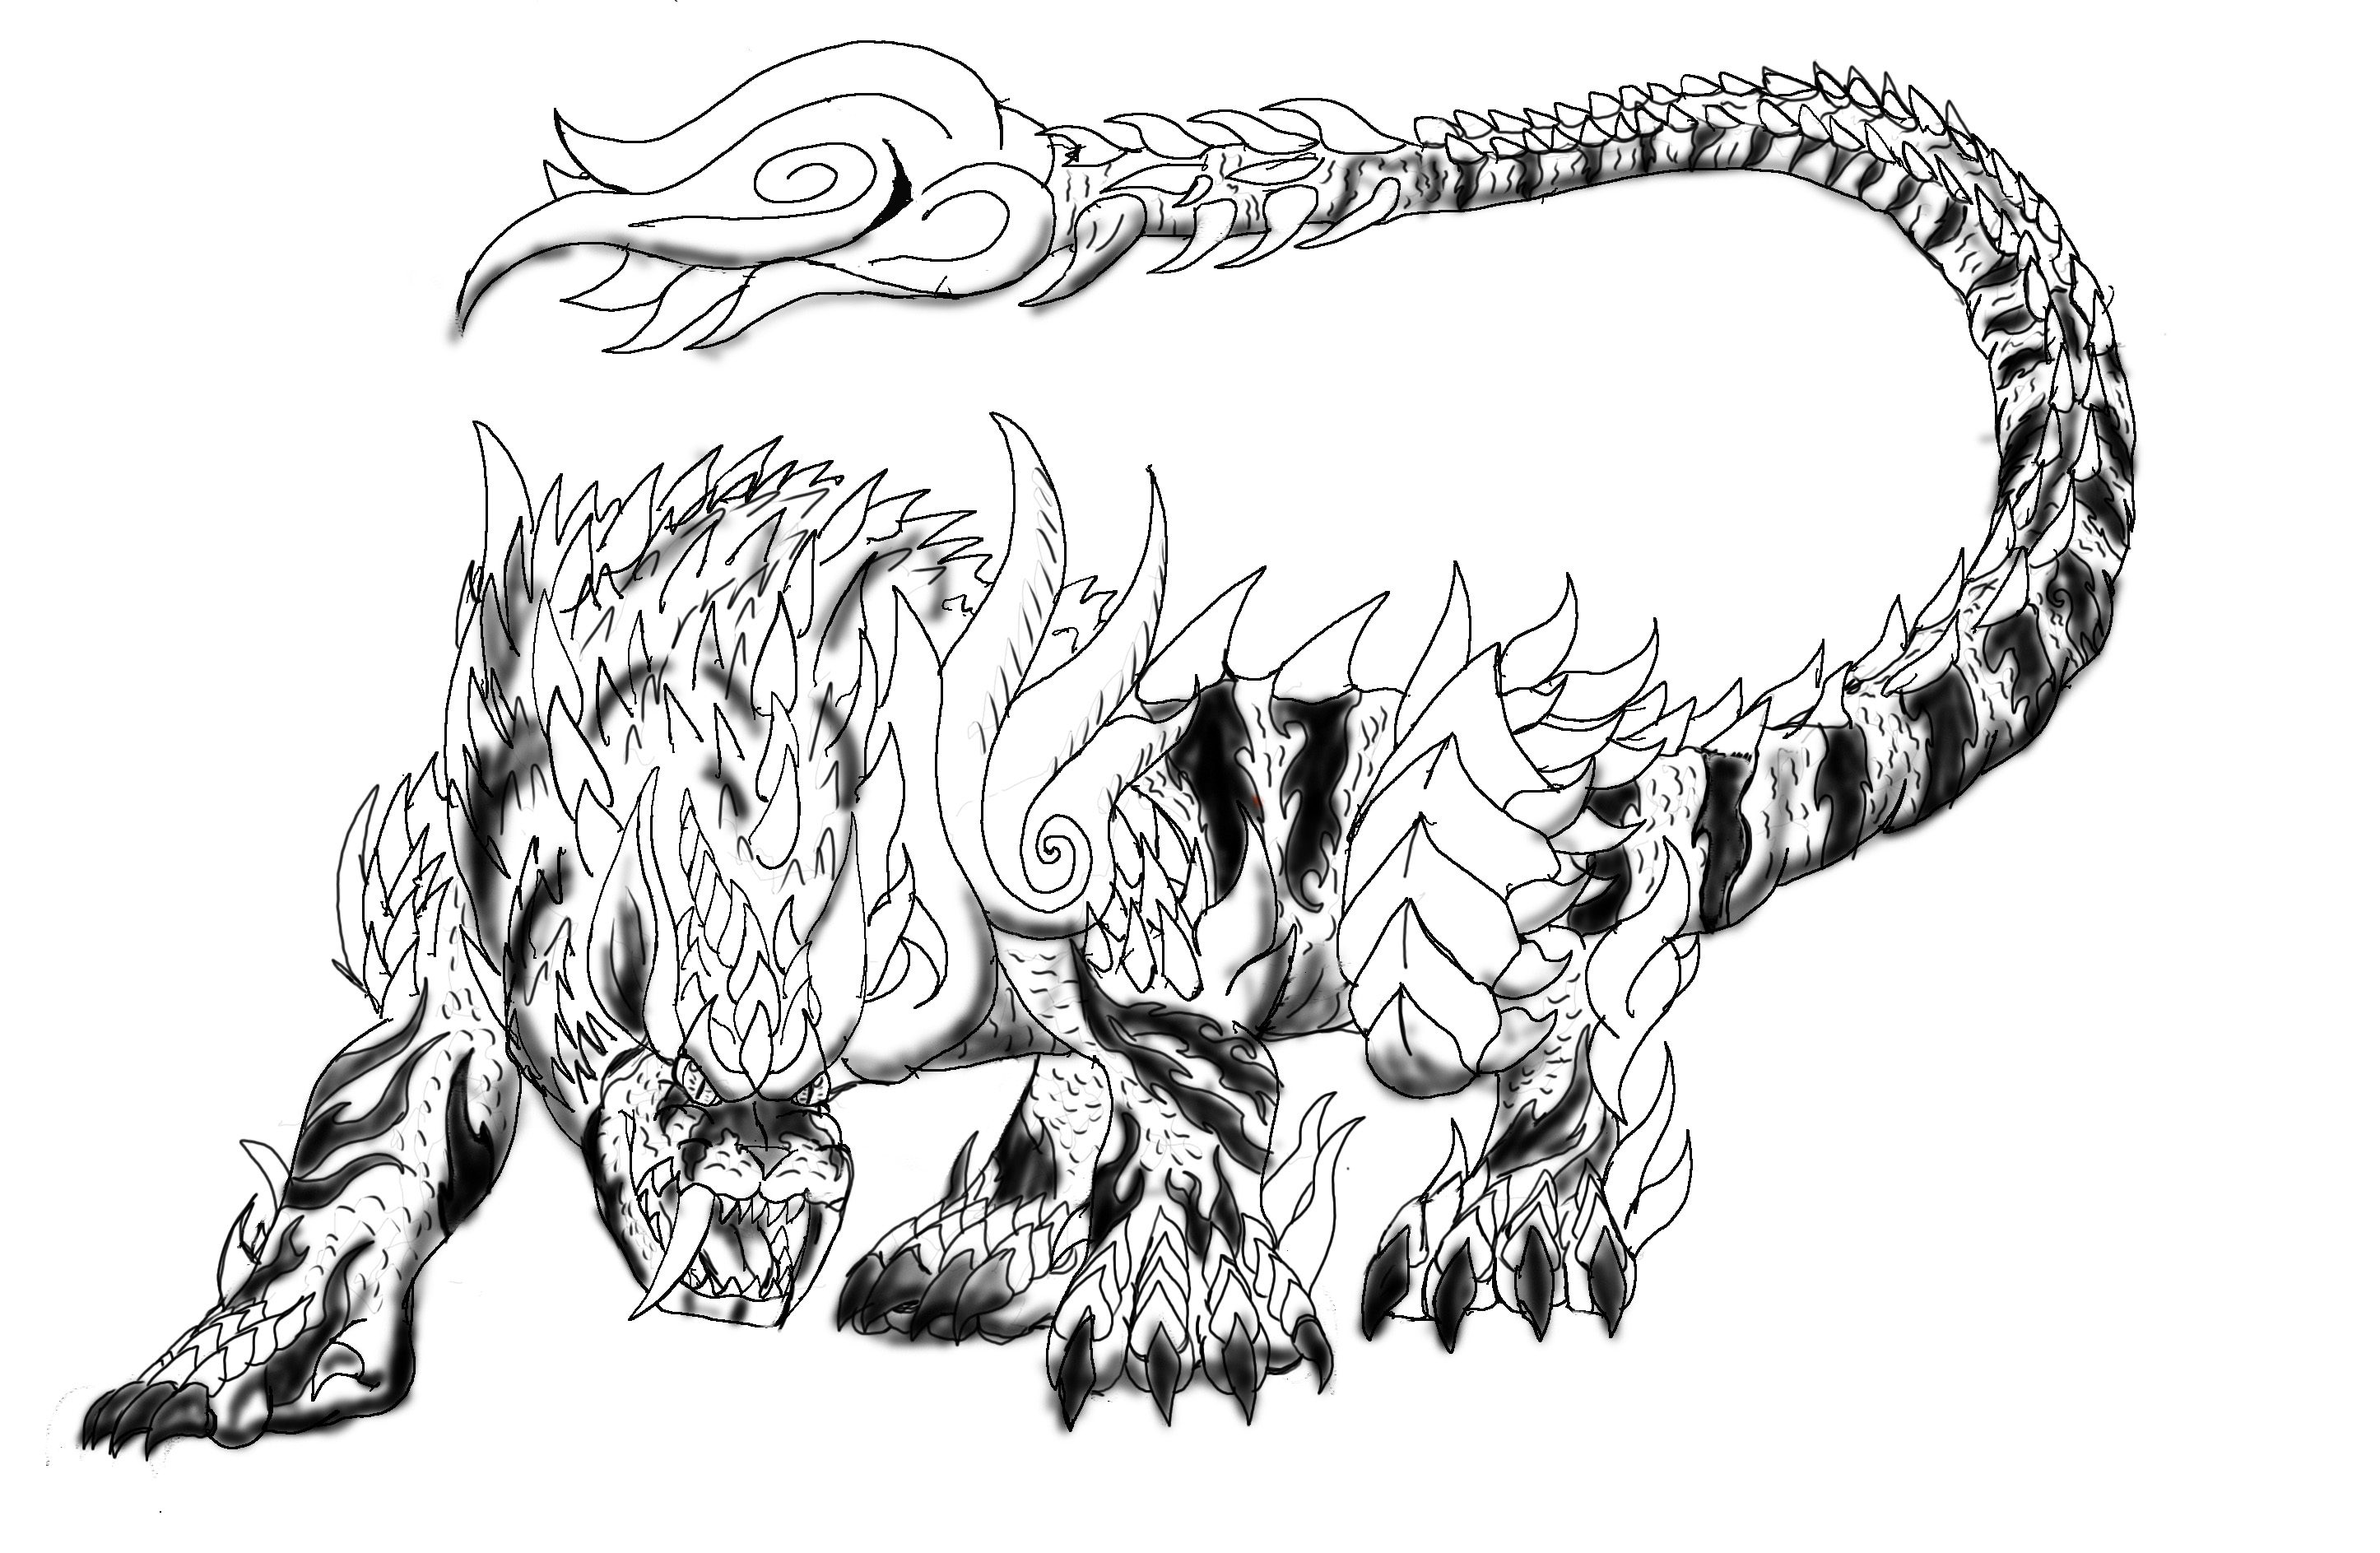 Monster design contest 2016 - kukuruyo